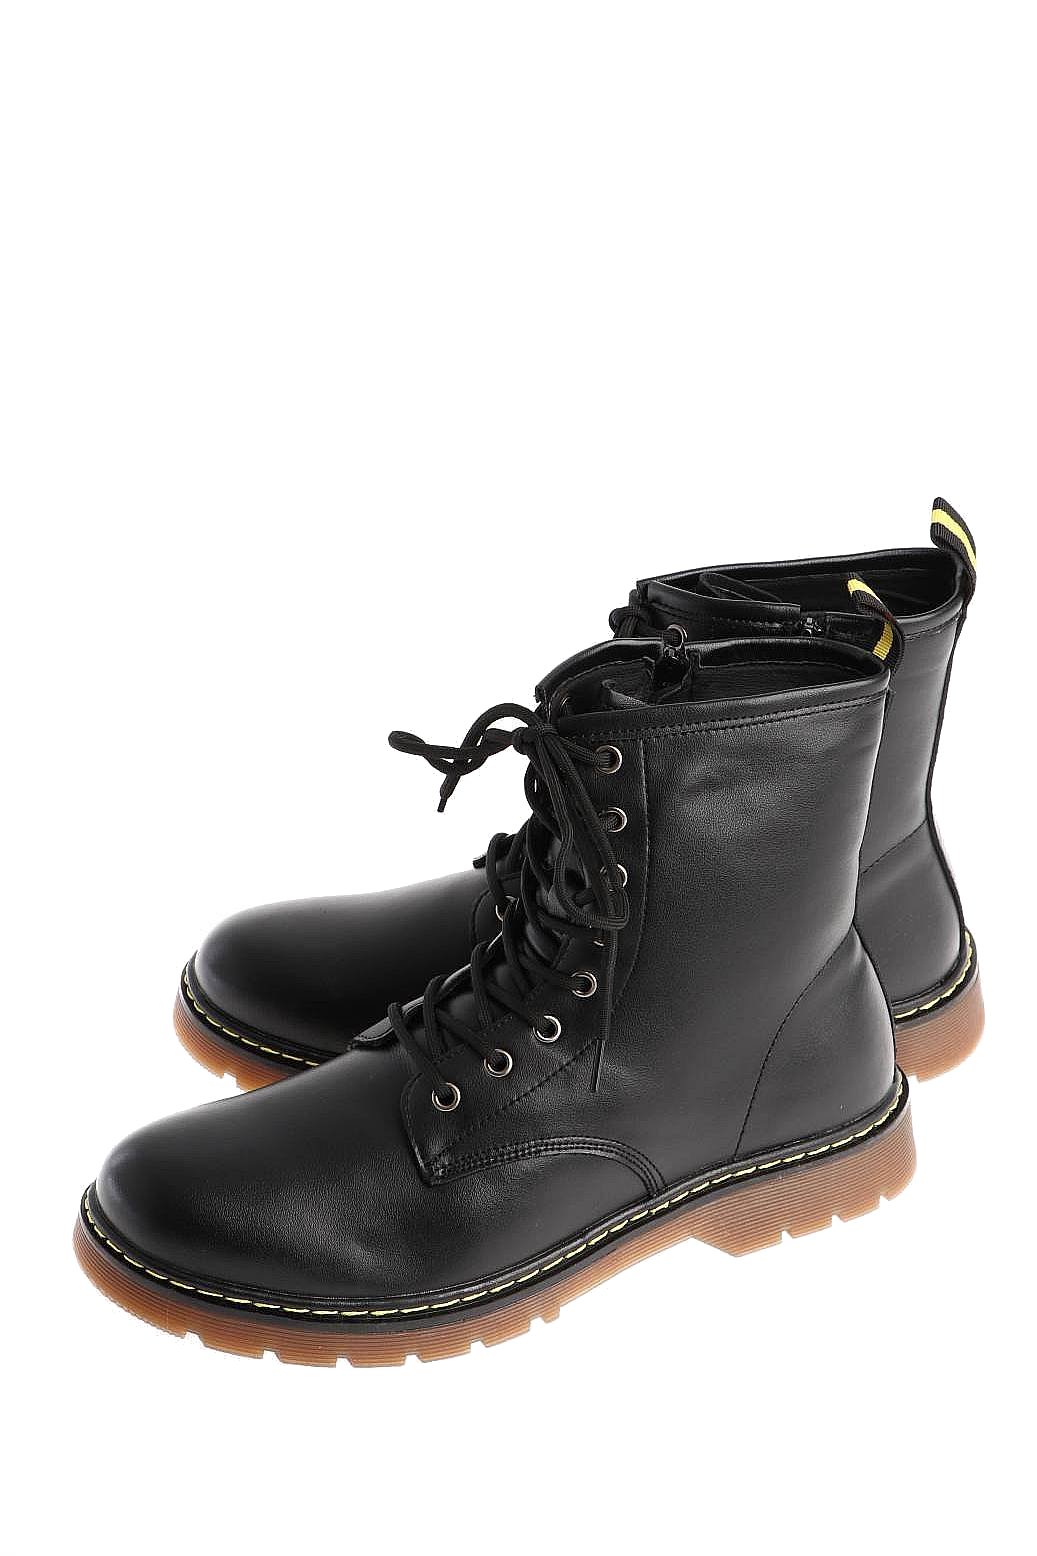 Ботинки мужские Highlander 128398-6, зимние, черные 41 RU